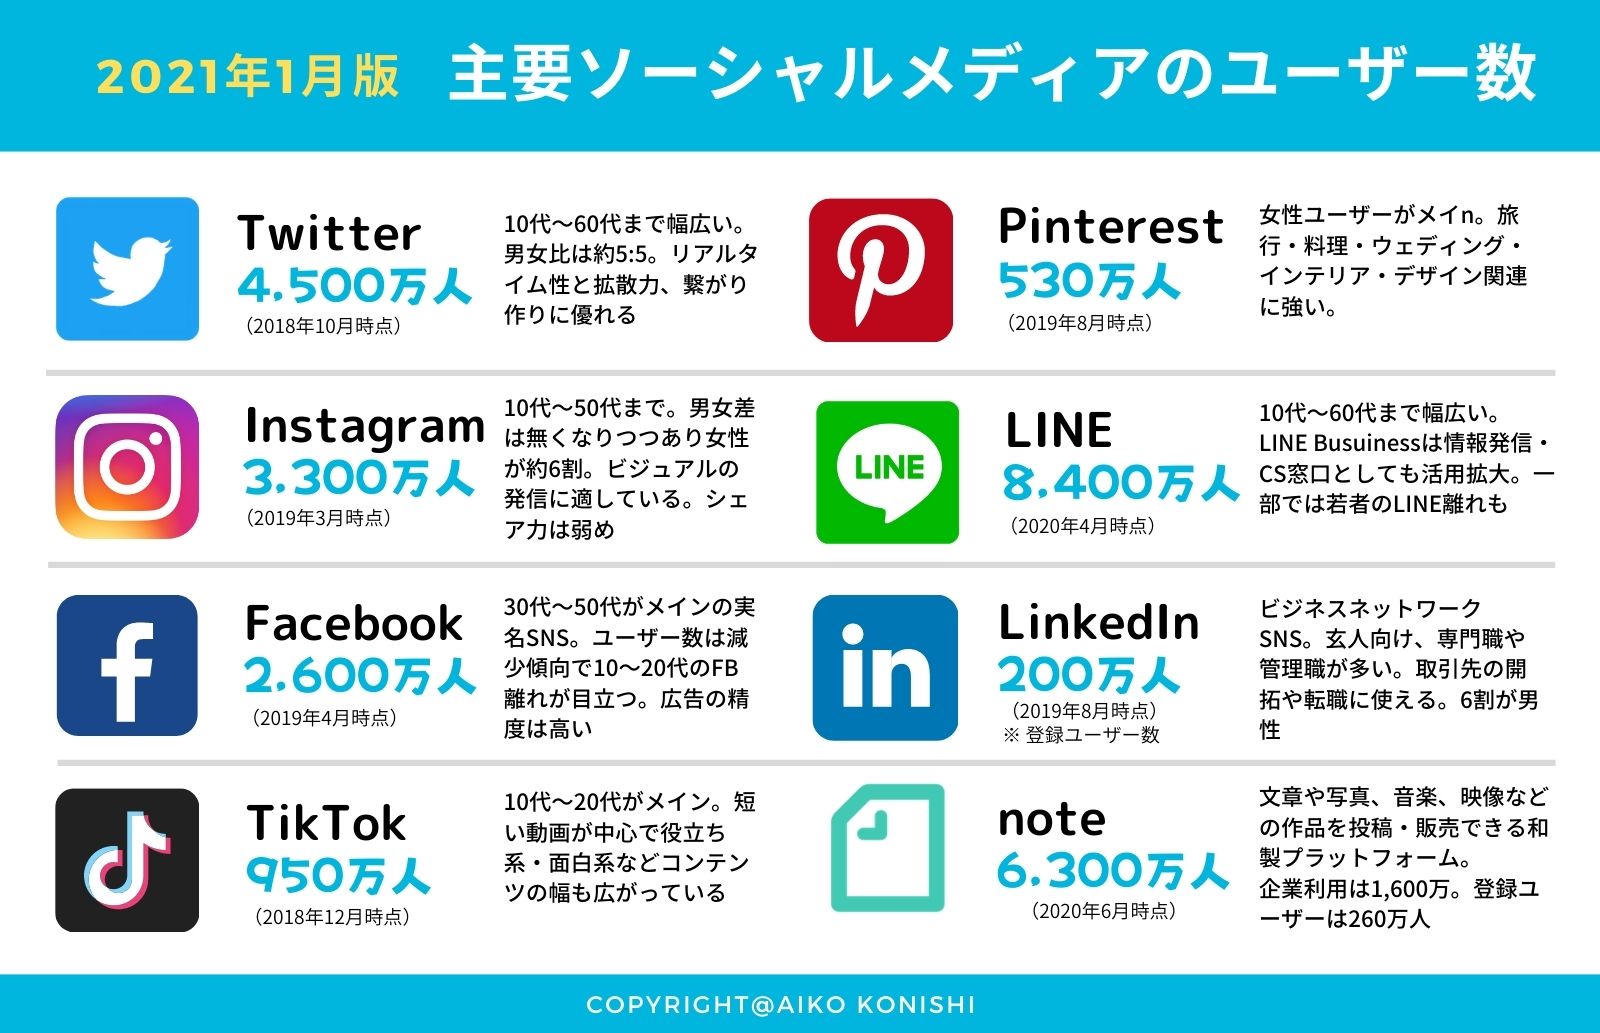 popular-social-media-in-japan-2021-january